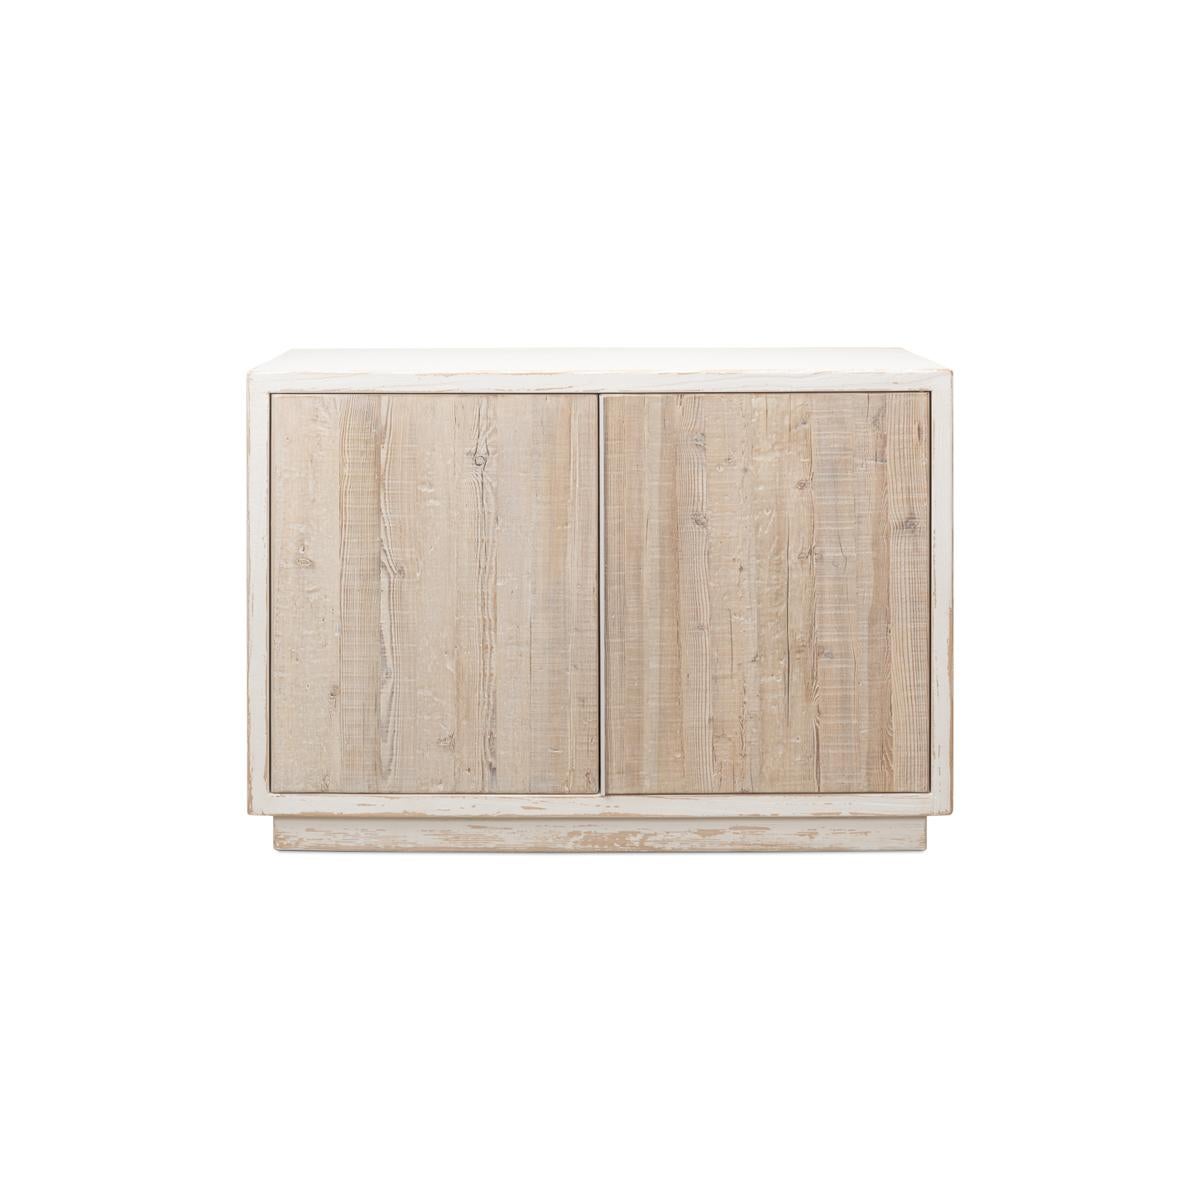 Le bois de pin blanc vieilli, associé à des portes à la finition vieillie, crée une pièce d'exception. Reposant sur une base carrée, ce meuble allie sans effort tradition et design contemporain.

Dimensions : 50